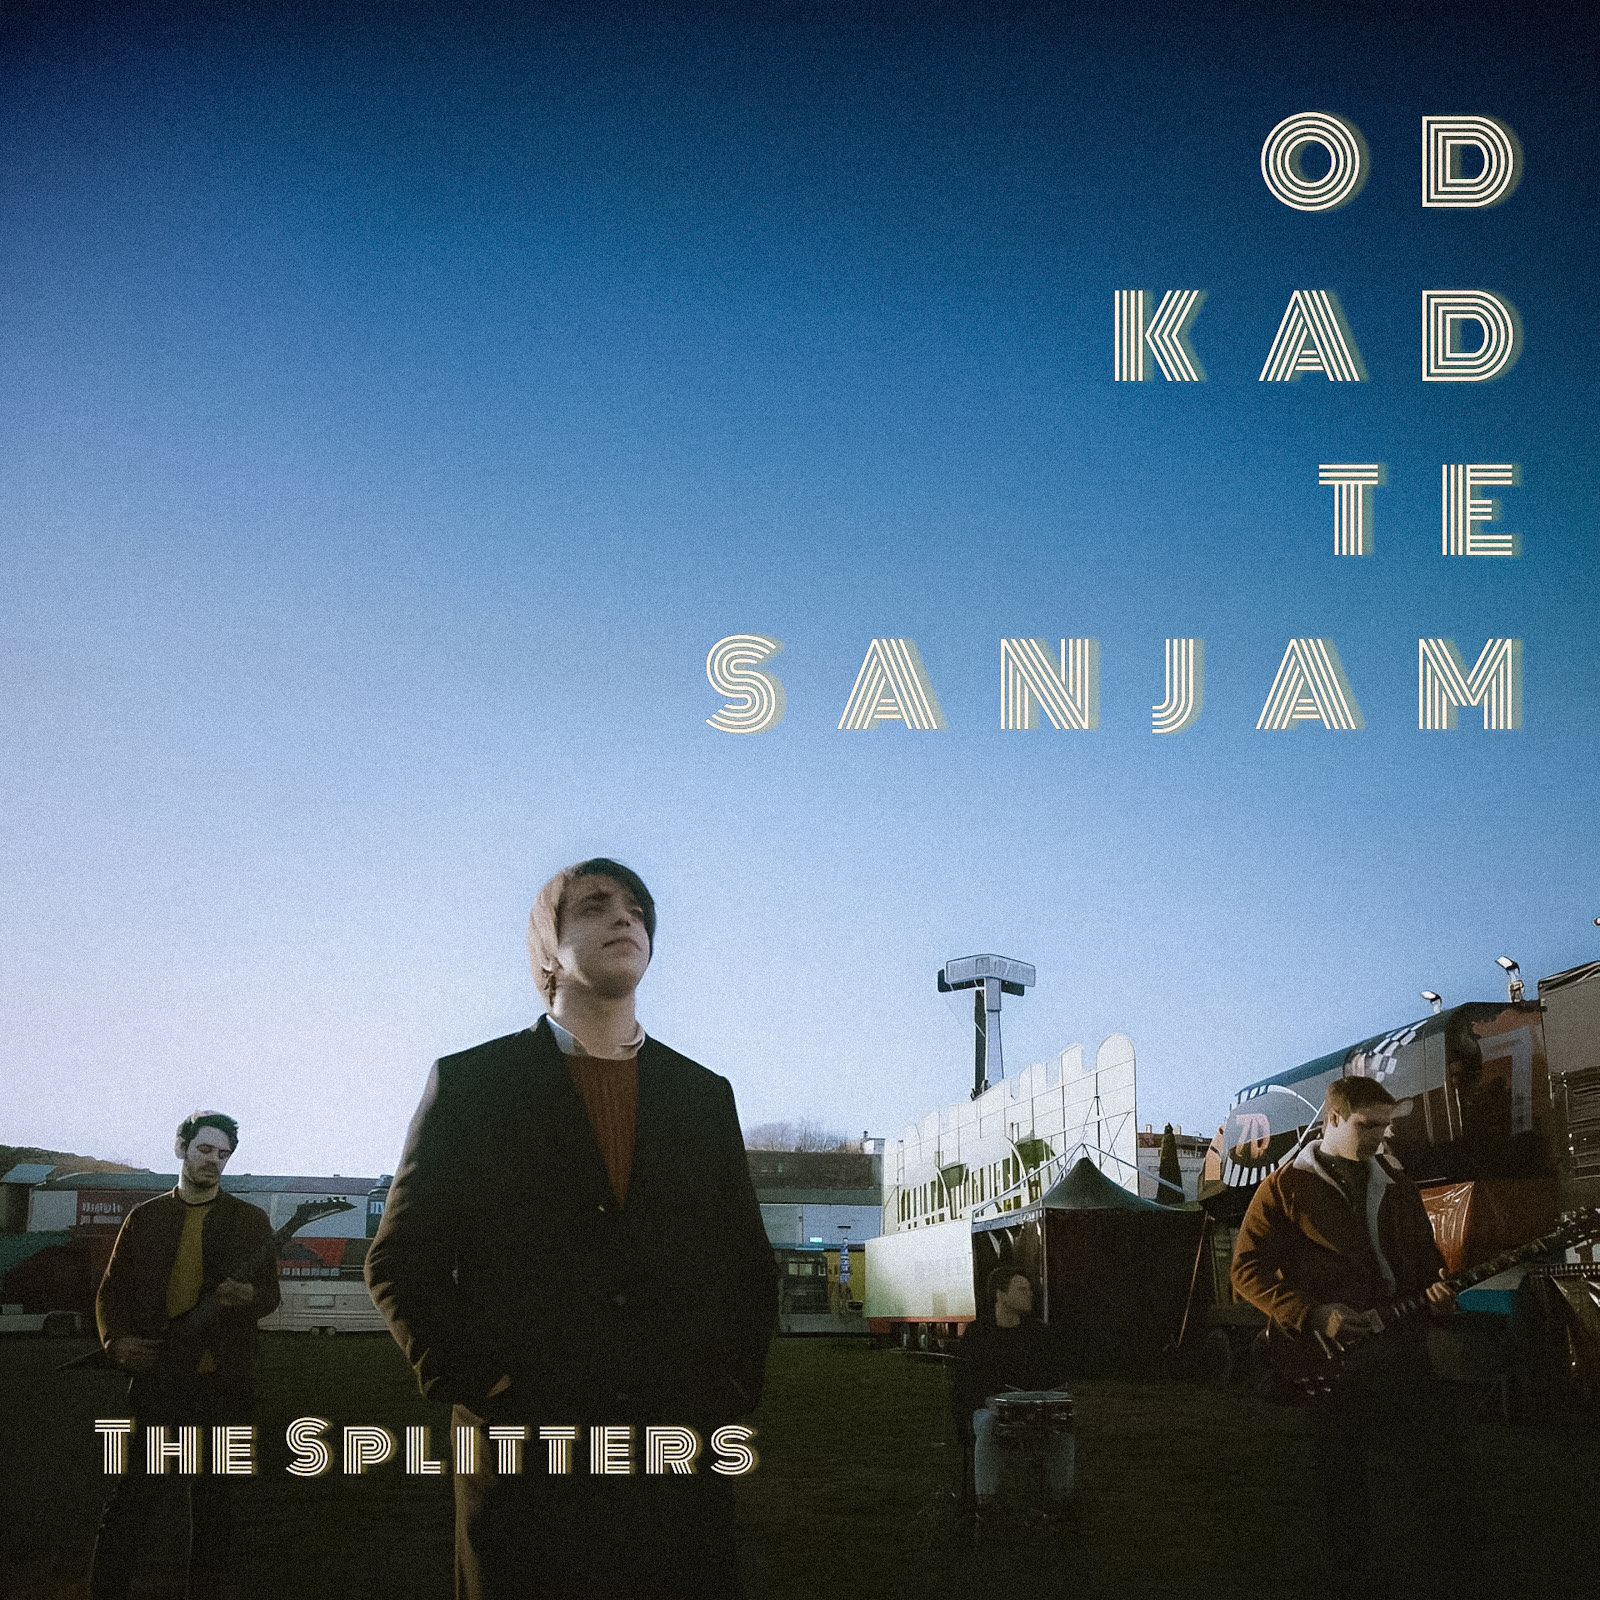 Nakon prošlogodišnjeg uspjeha, The Splitters se vraćaju na Doru s pjesmom “Od kad te sanjam”